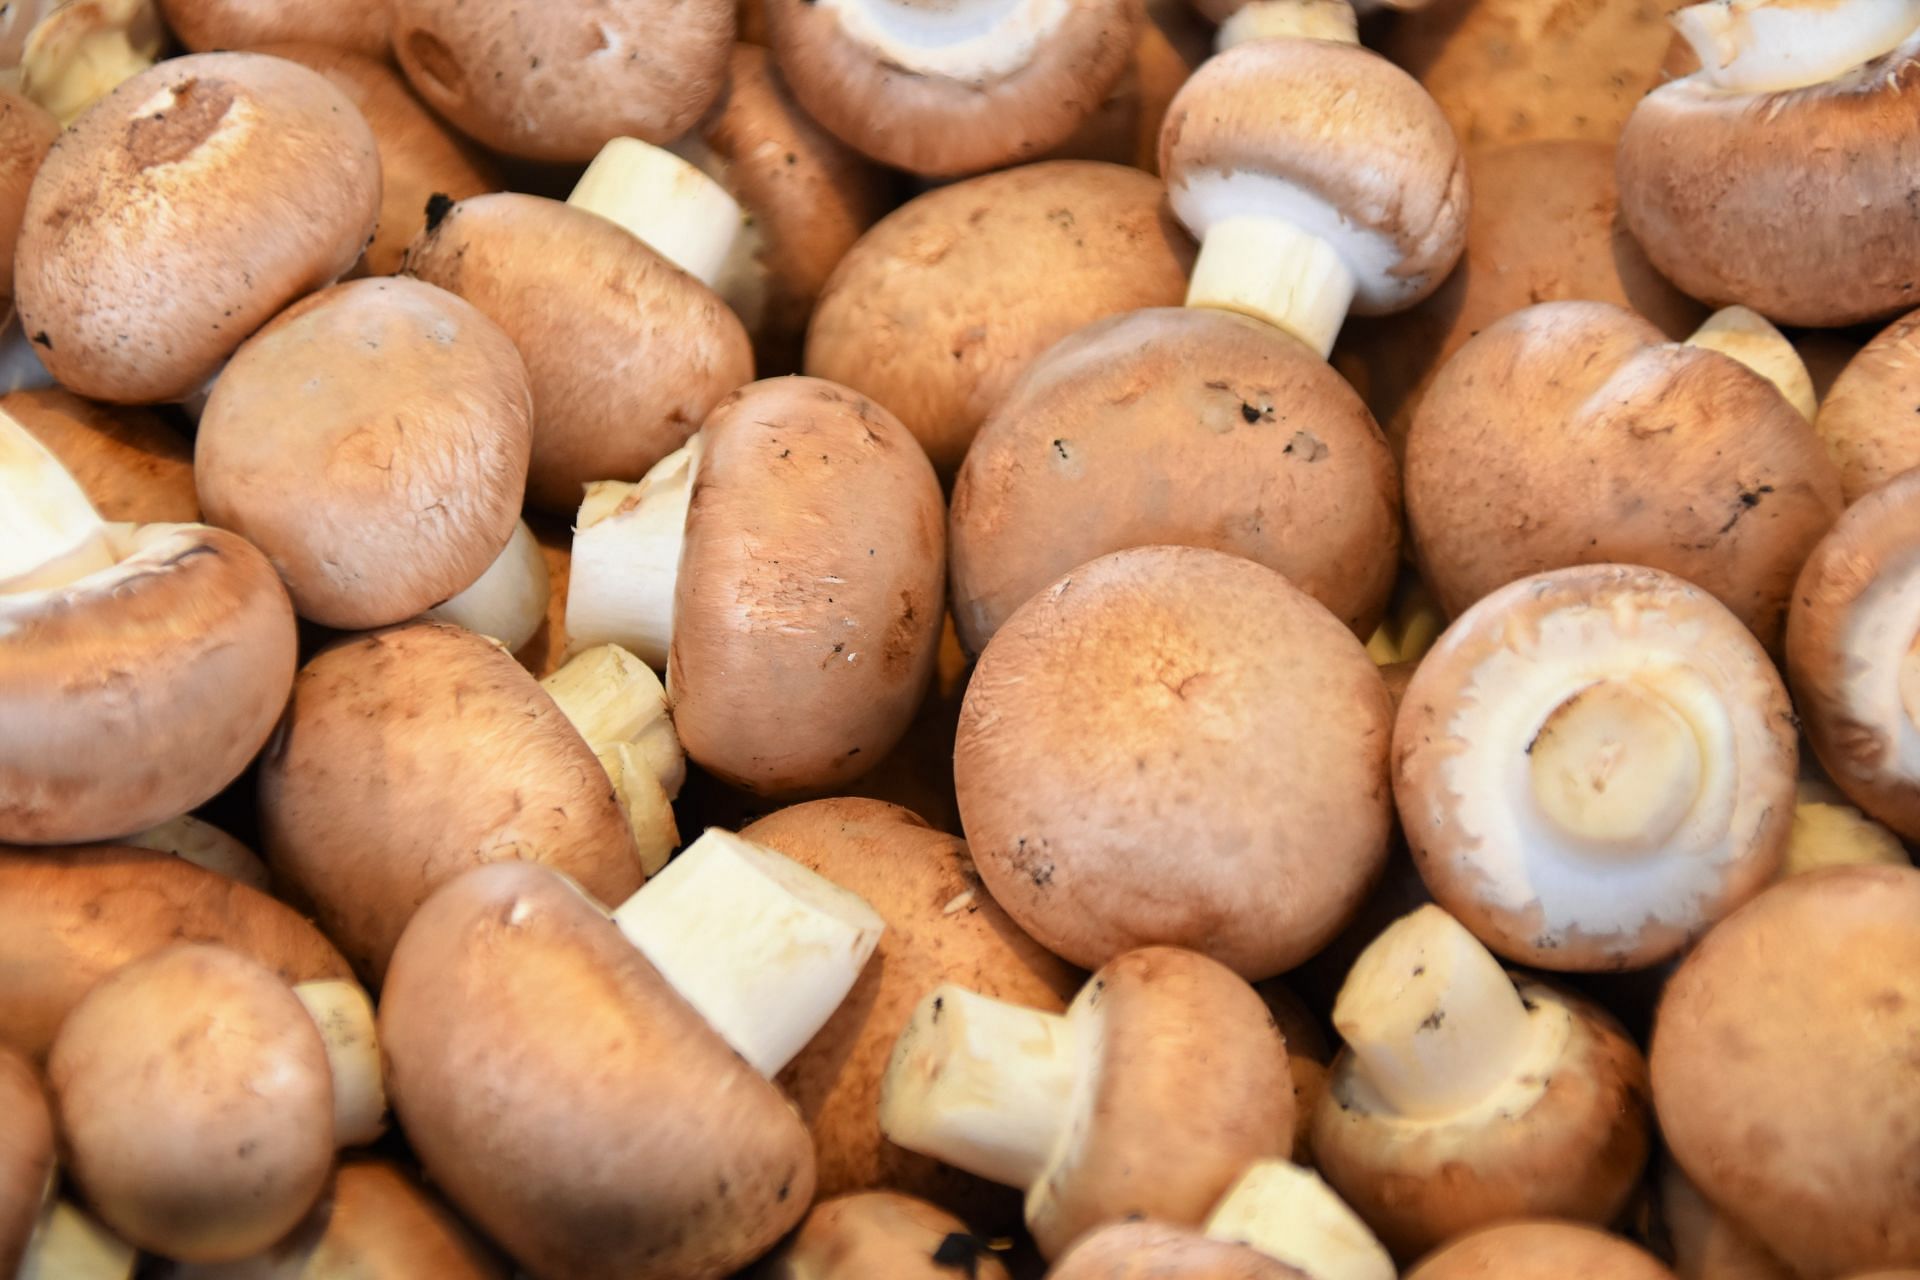 Mushrooms (Image via Unsplash/Waldemar)